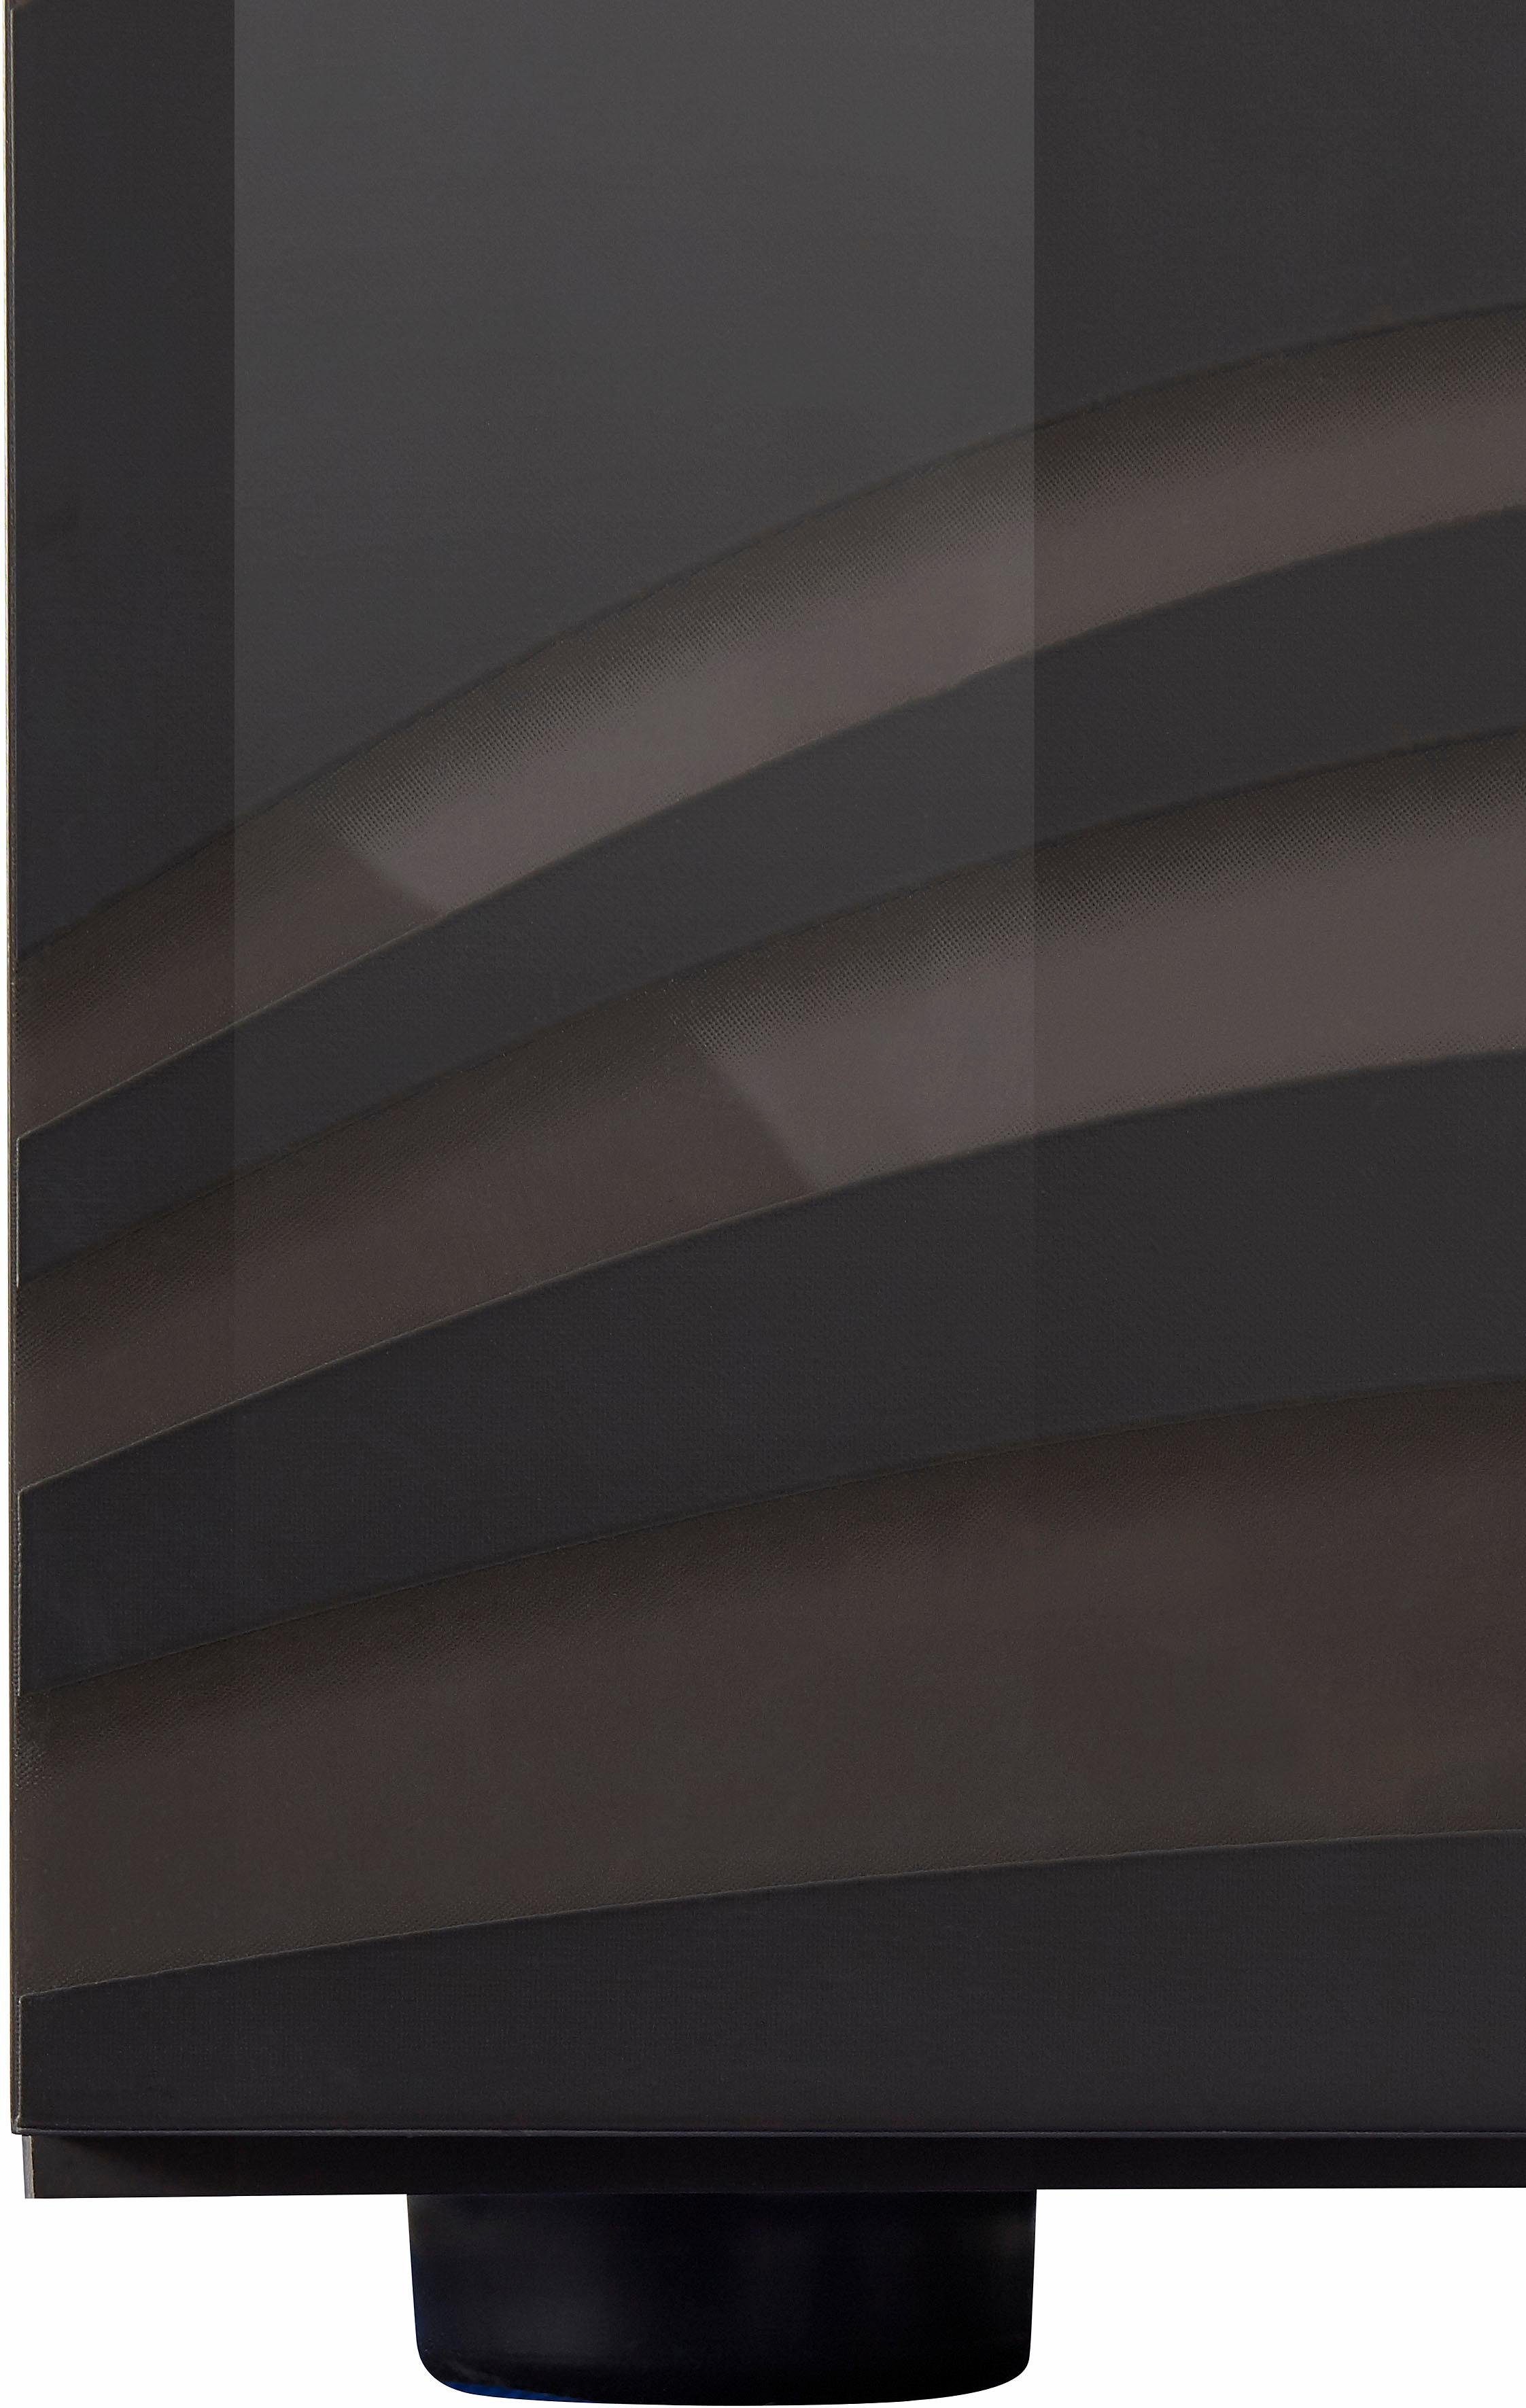 LC Stauraumvitrine Miro Stauraumvitrine, Siebdruck mit cm 166 Höhe Hochglanz mit Anthrazit Lack Siebdruck dekorativem